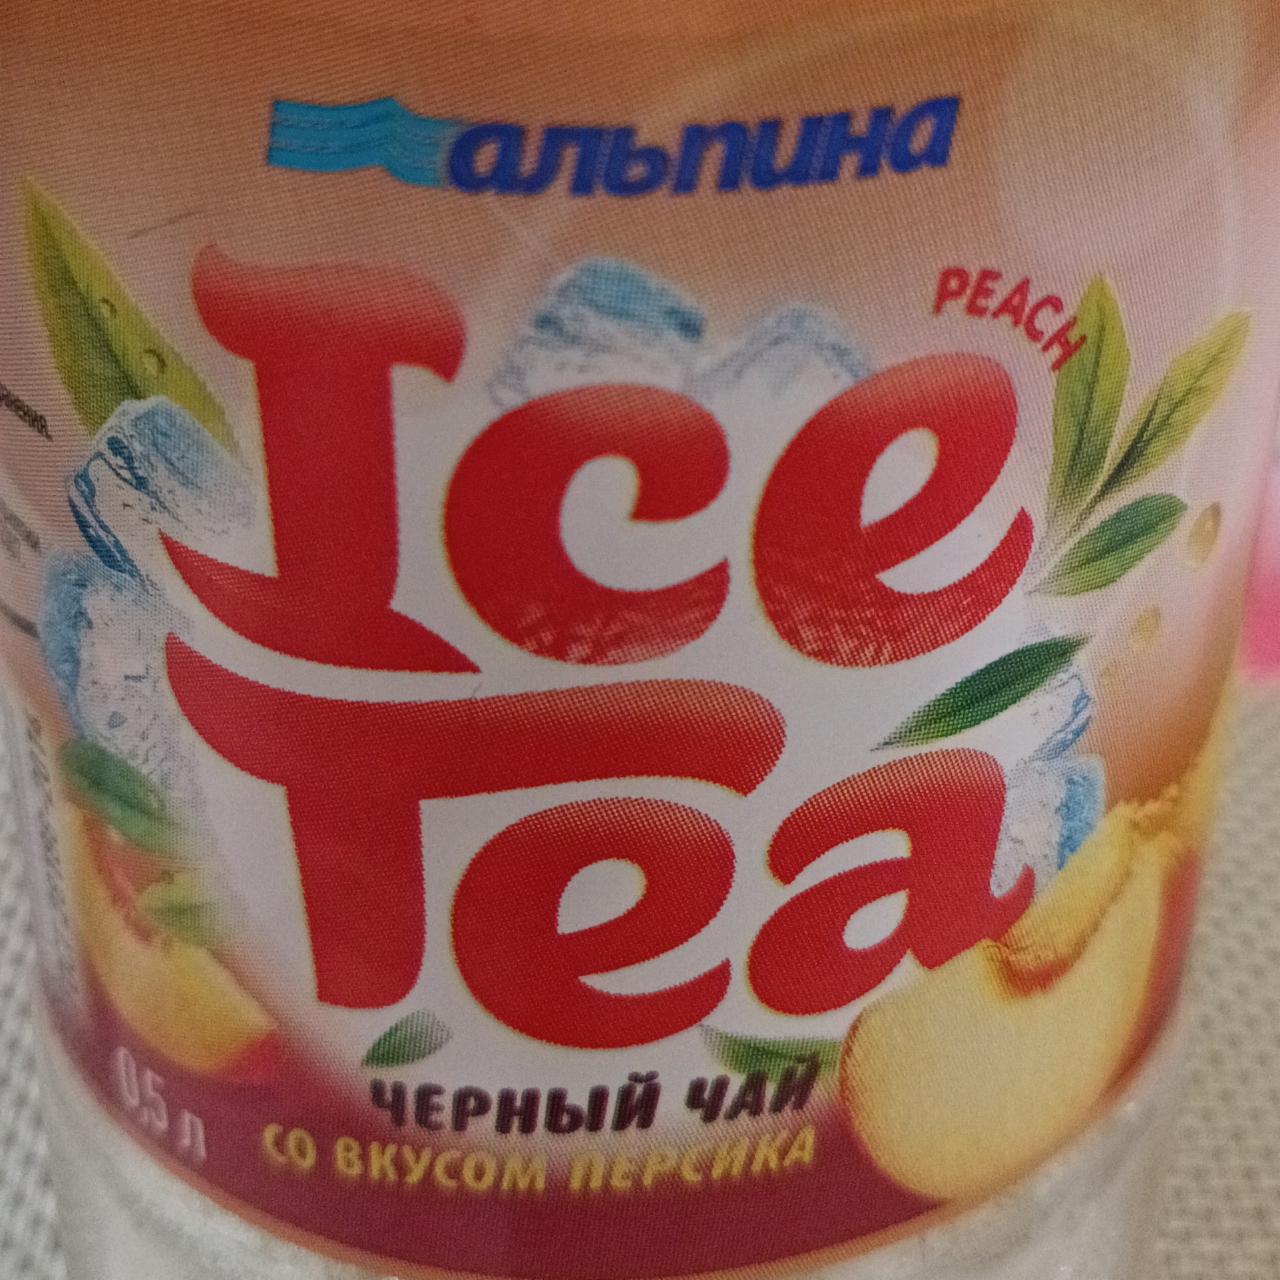 Фото - чёрный чай ISE TEA со вкусом персика Альпина